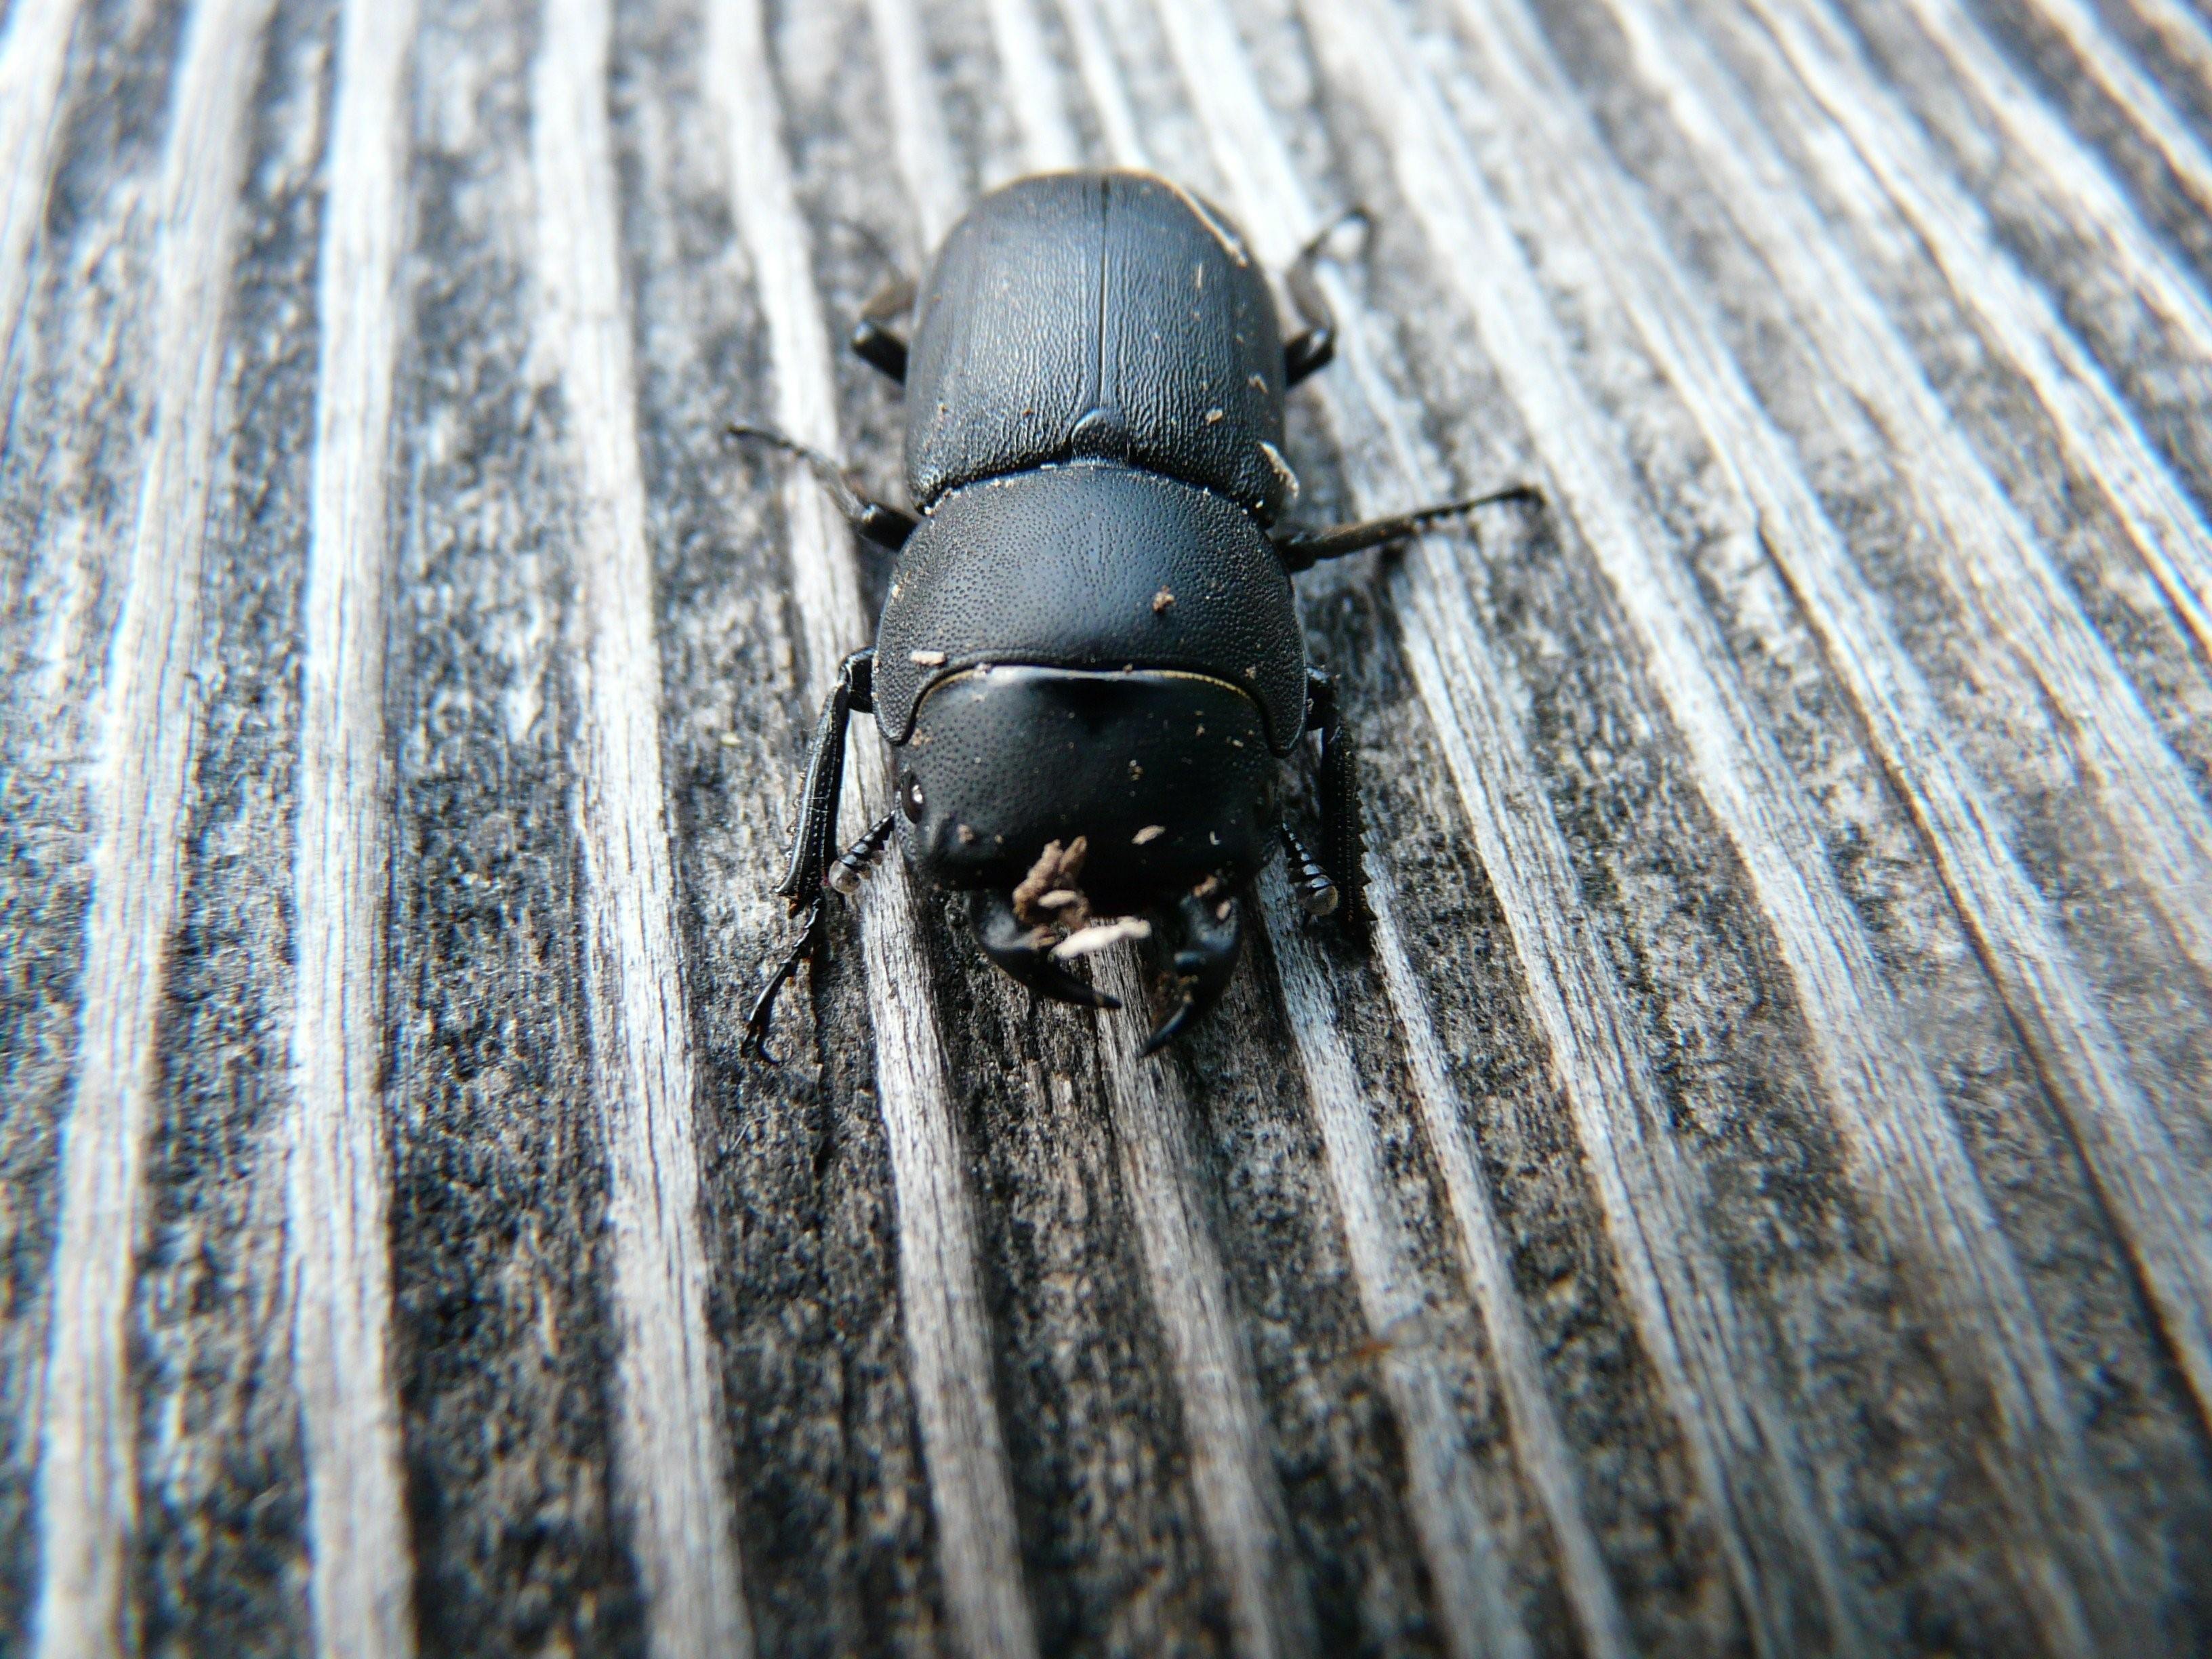 Большой черный жук на даче фото